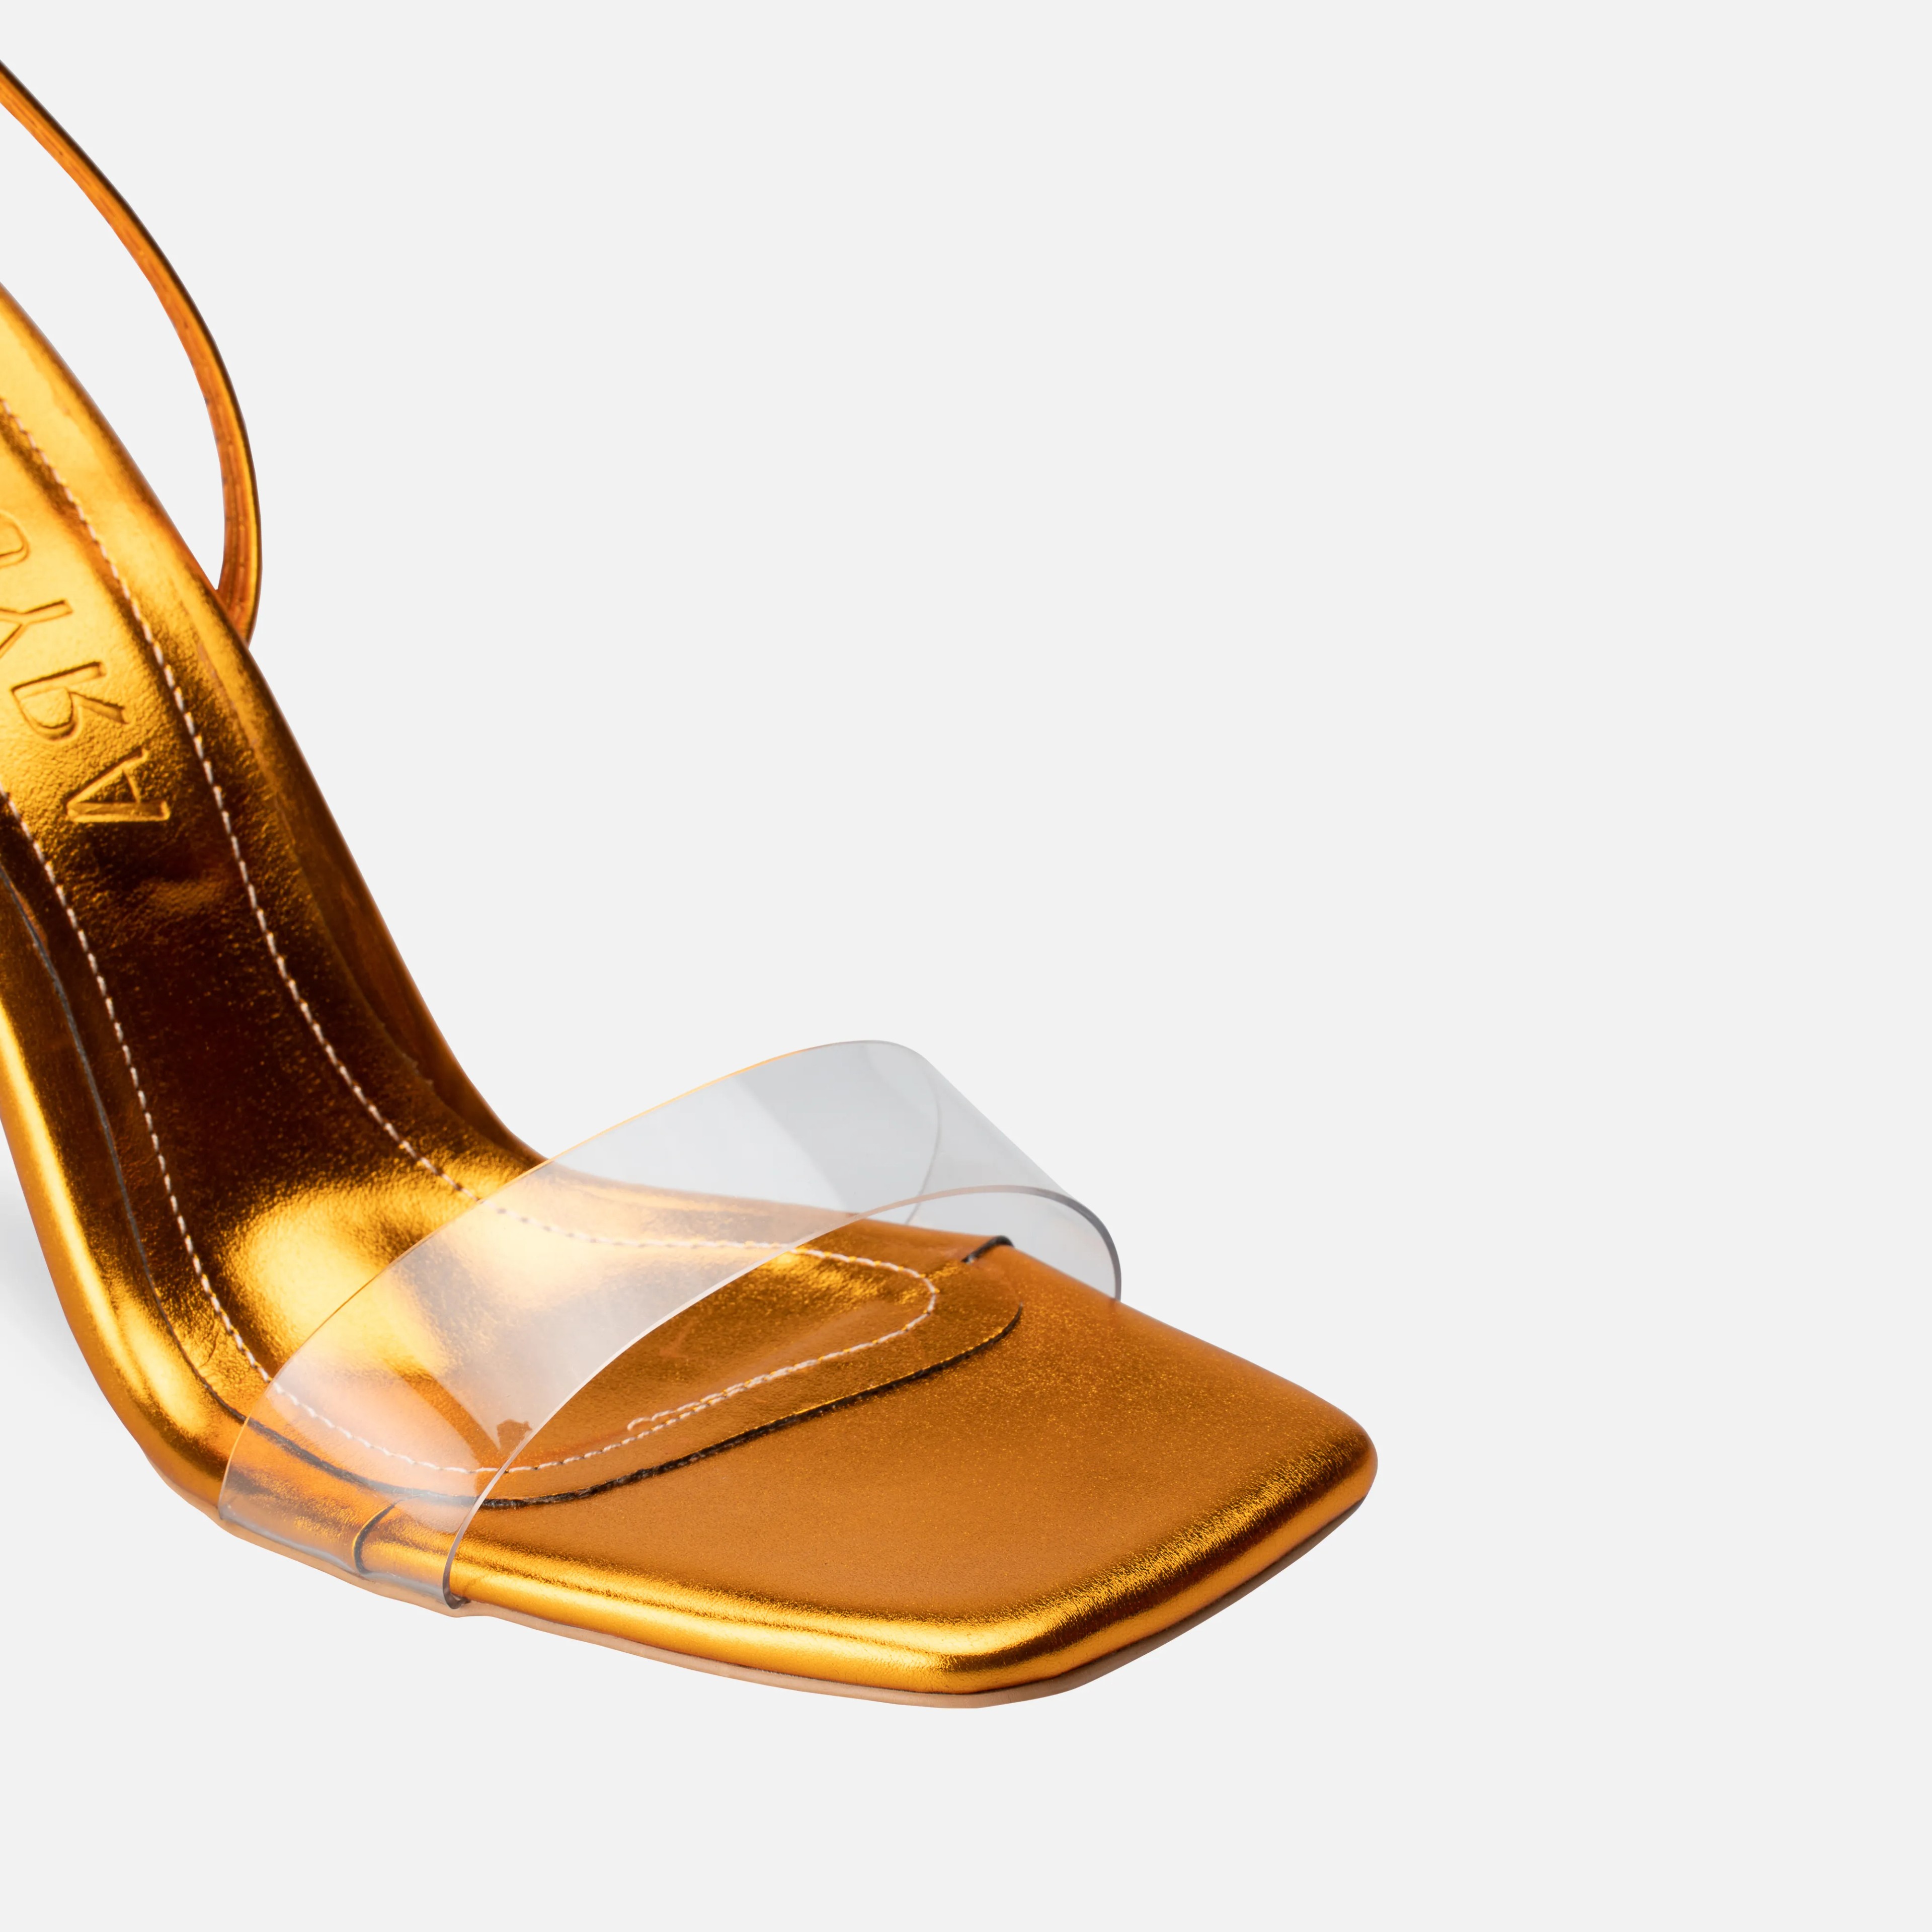 Metalik Şeffaf Bantlı Bağcıklı İnce Yüksek Topuklu Ayakkabı - Turuncu